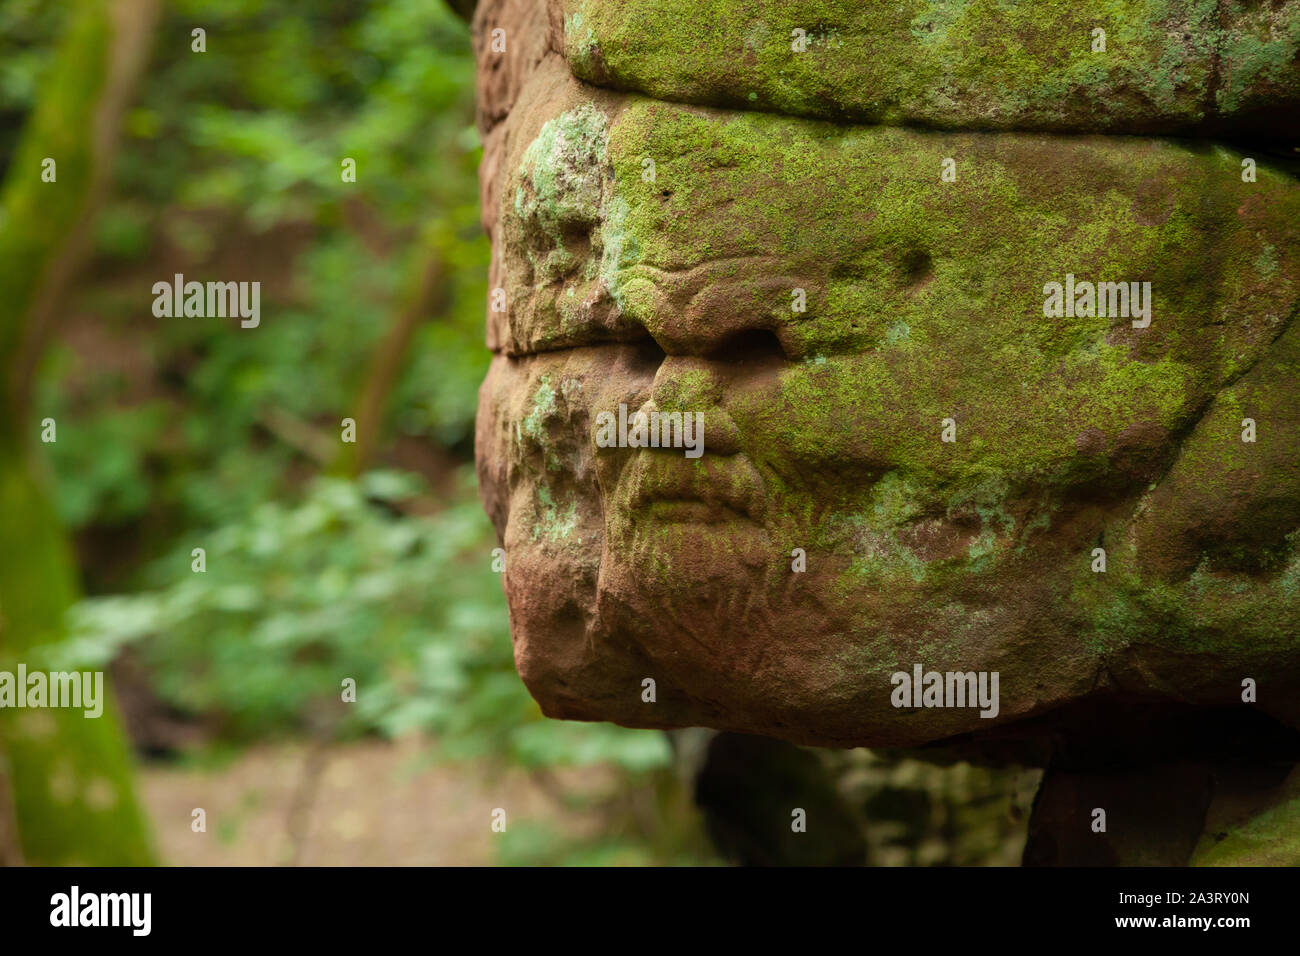 Cara de un hombre tallados en piedra, Den, Dunino Dunino, Saint Andrews, Fife, Escocia Foto de stock